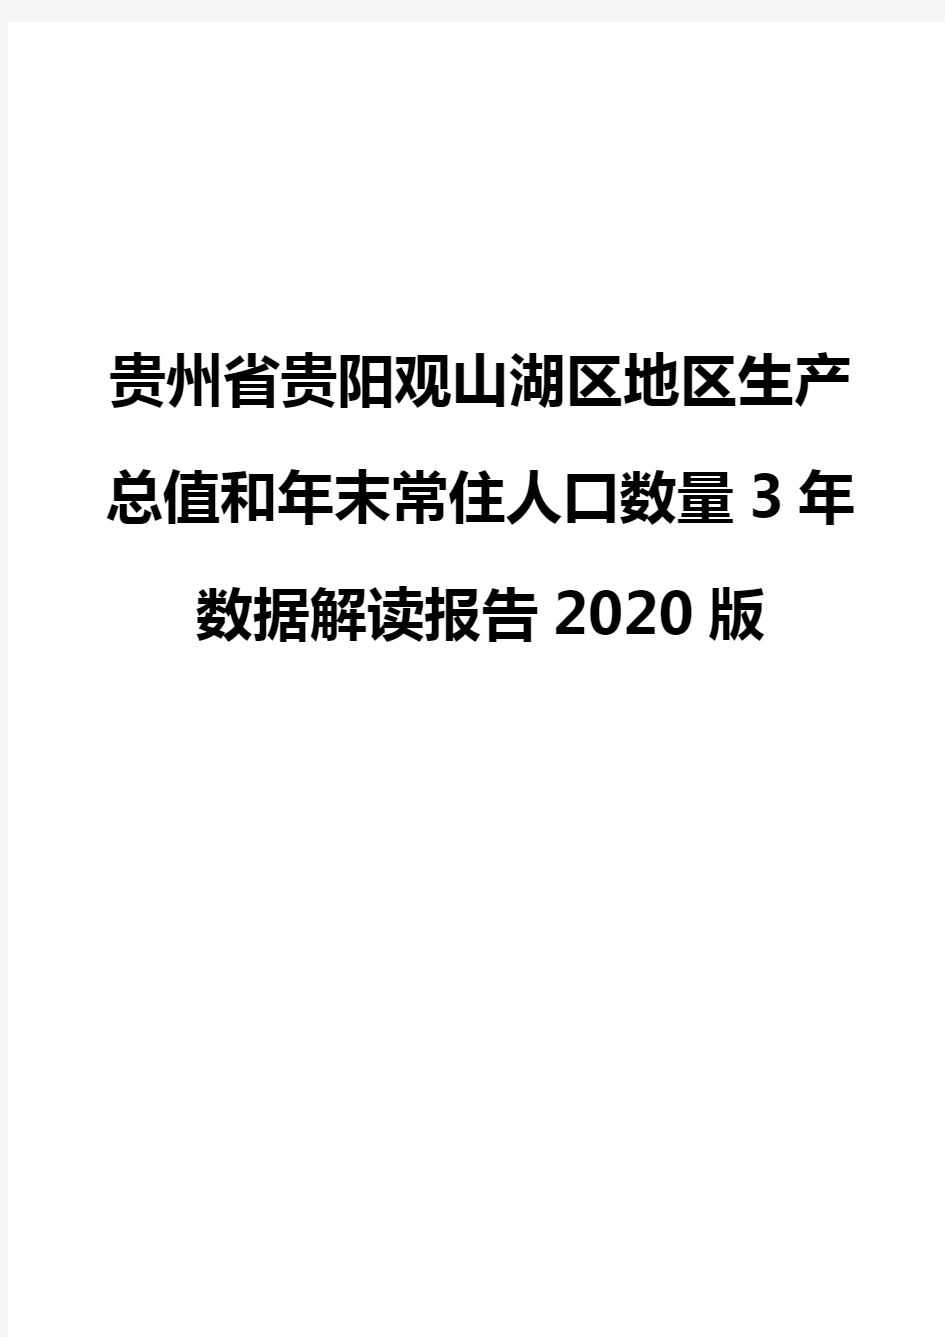 贵州省贵阳观山湖区地区生产总值和年末常住人口数量3年数据解读报告2020版